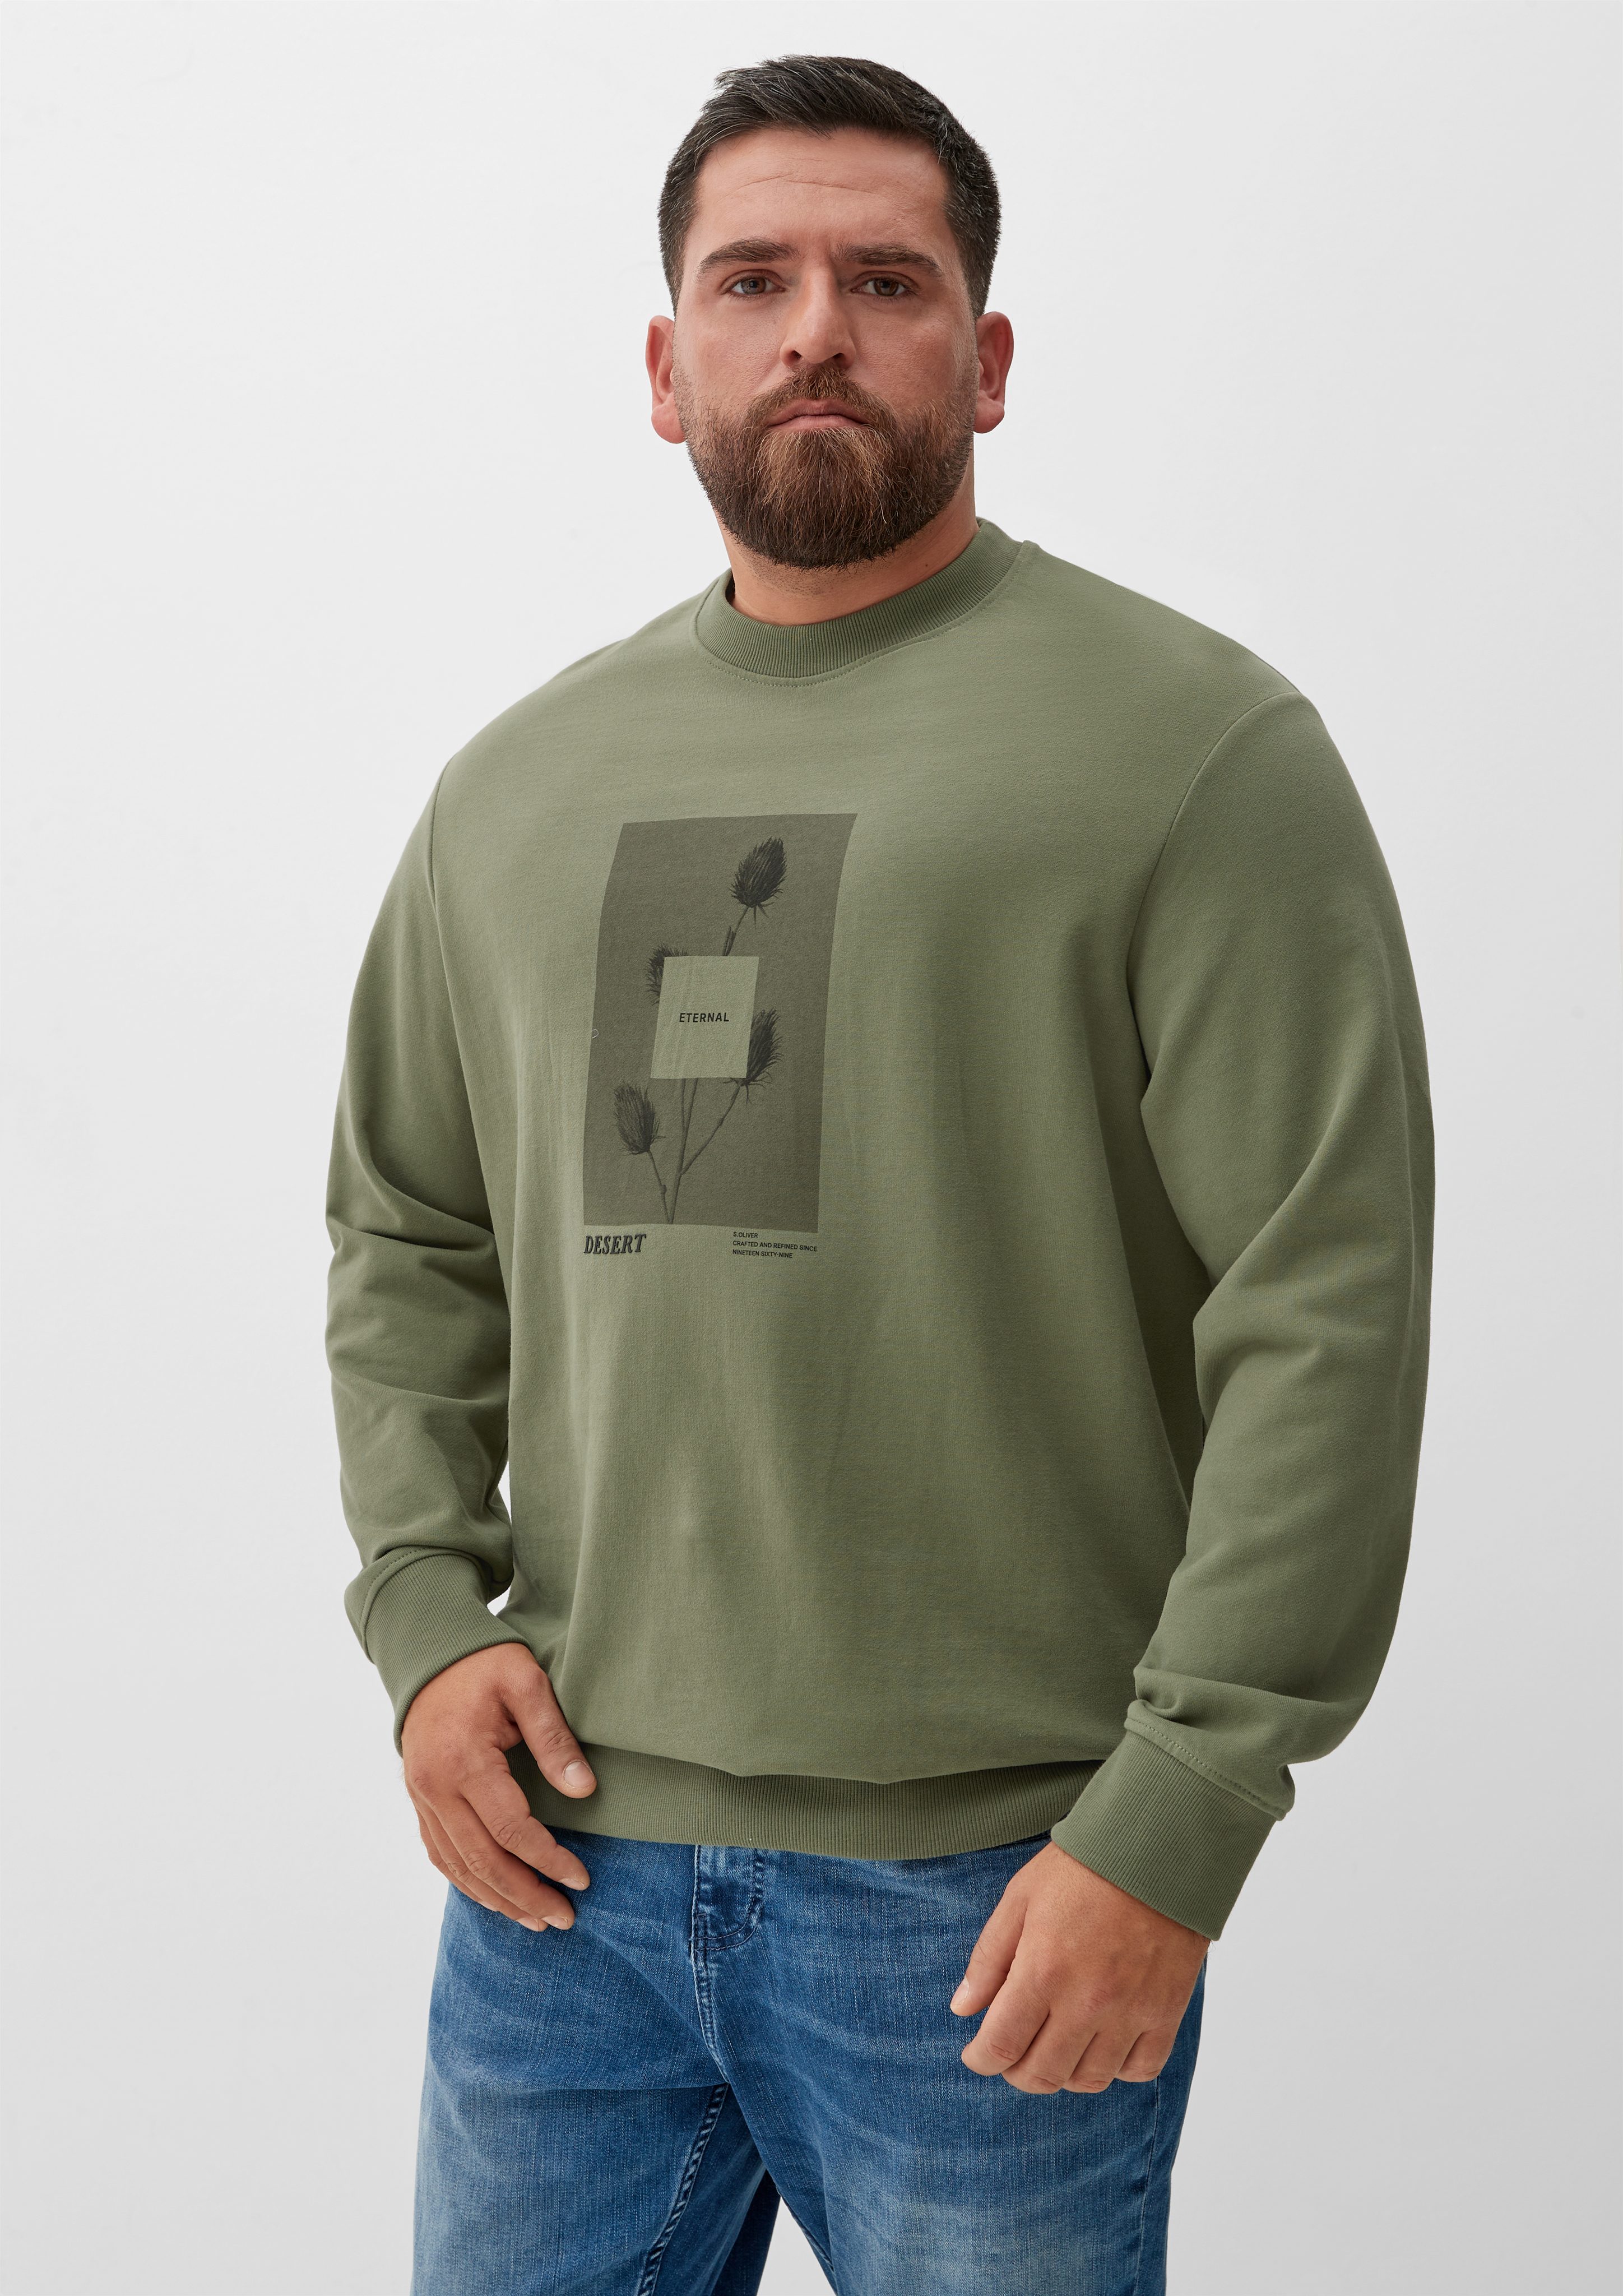 s.Oliver Sweatshirt Sweatshirt mit Frontprint olivgrün